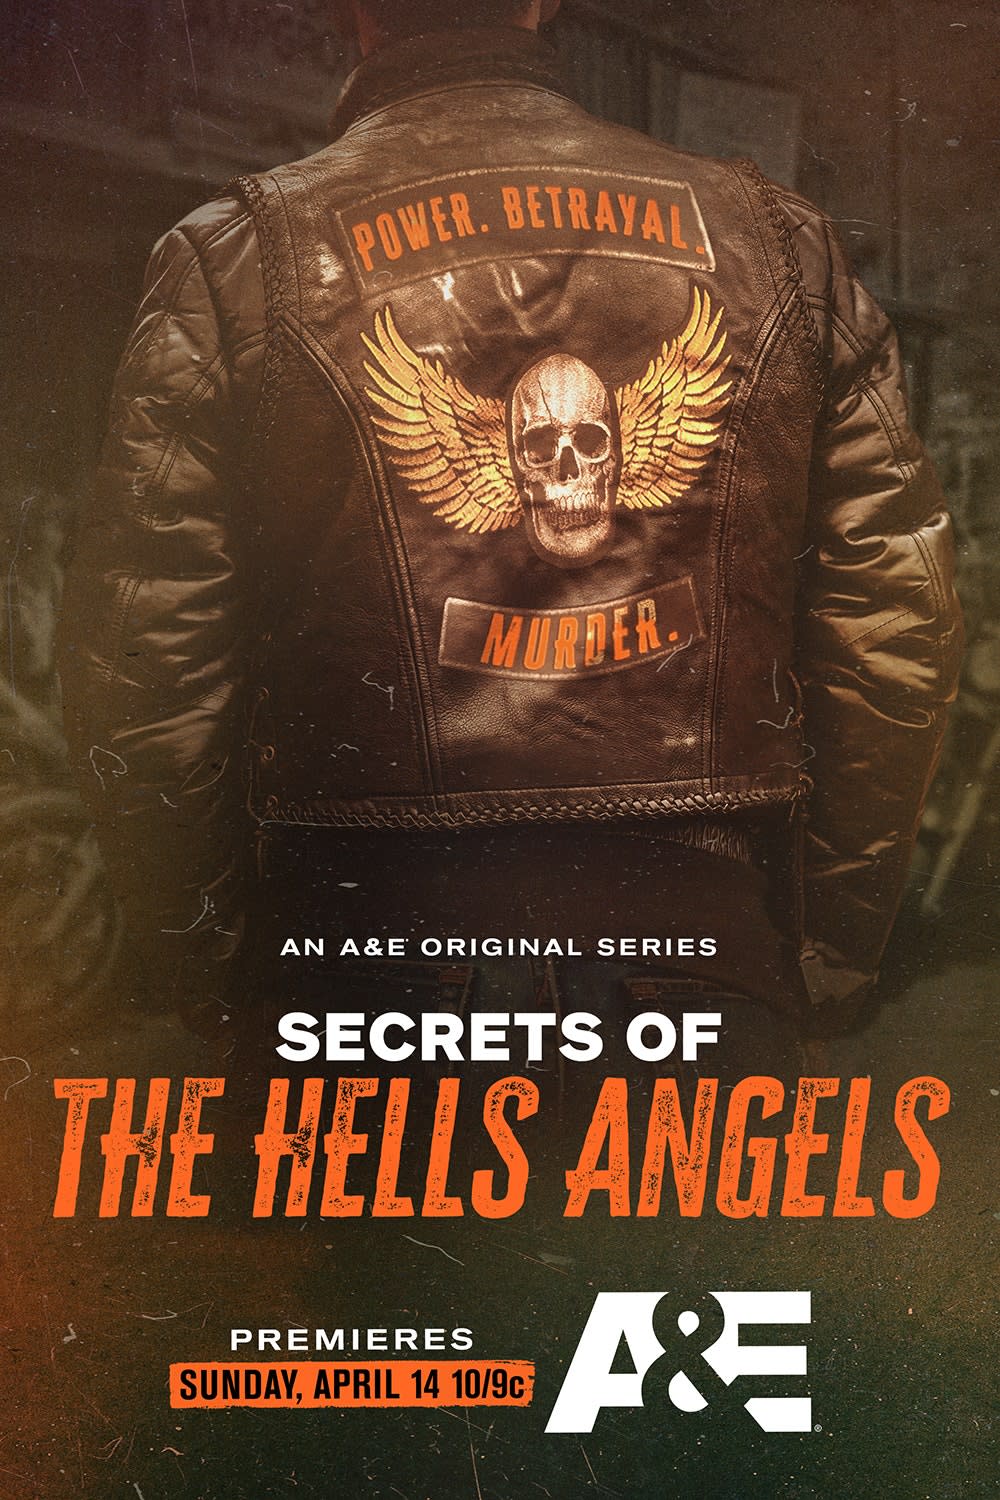 Poster for Secrets of the Hells Angels showing back of biker jacket